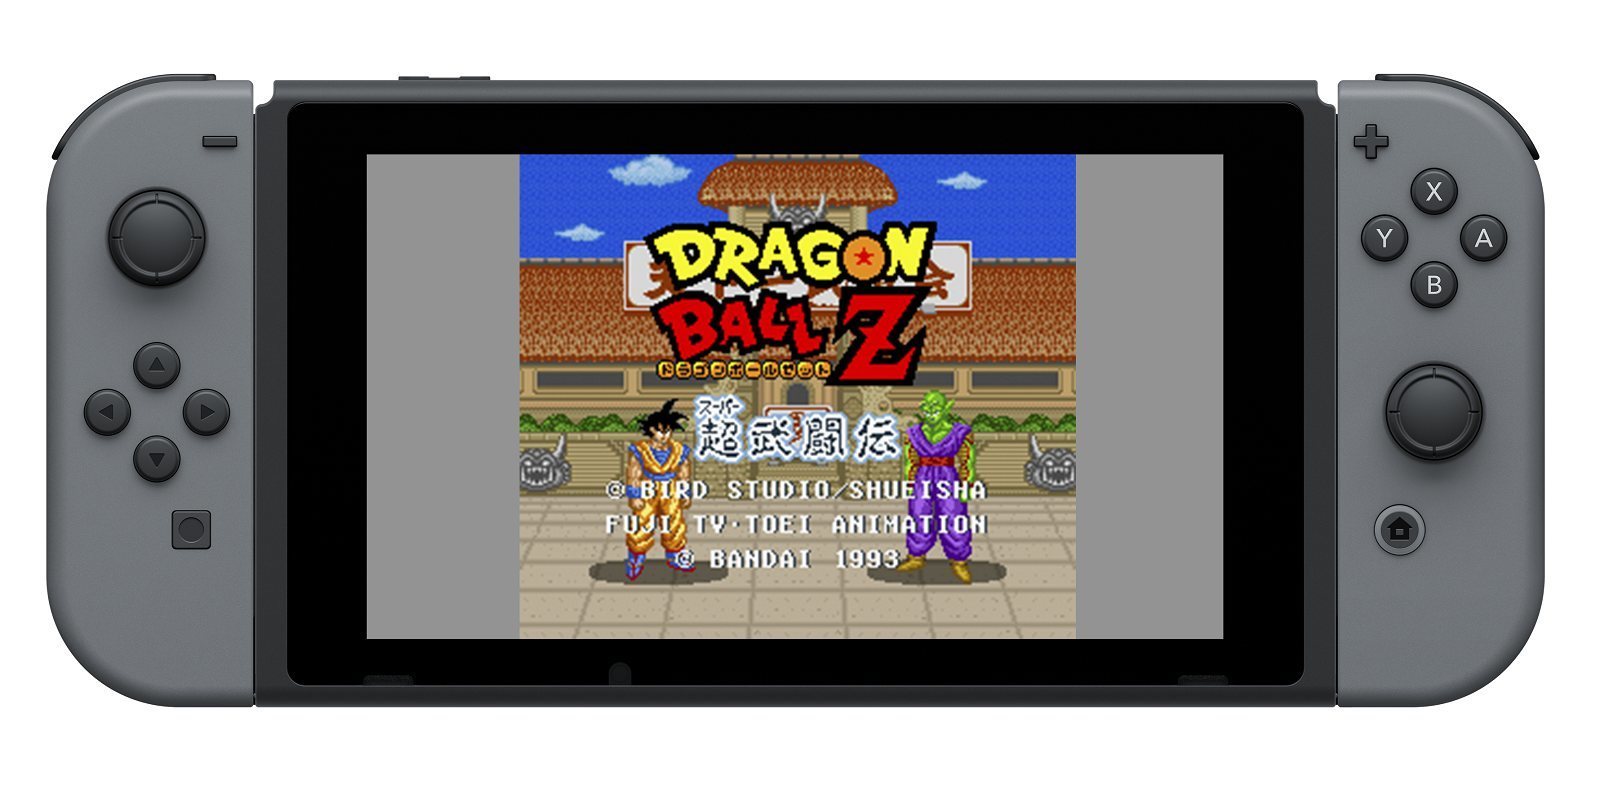 'Dragon Ball Z: Super Butouden' gratis en América si Bandai Namco llega a 10.000 suscriptores